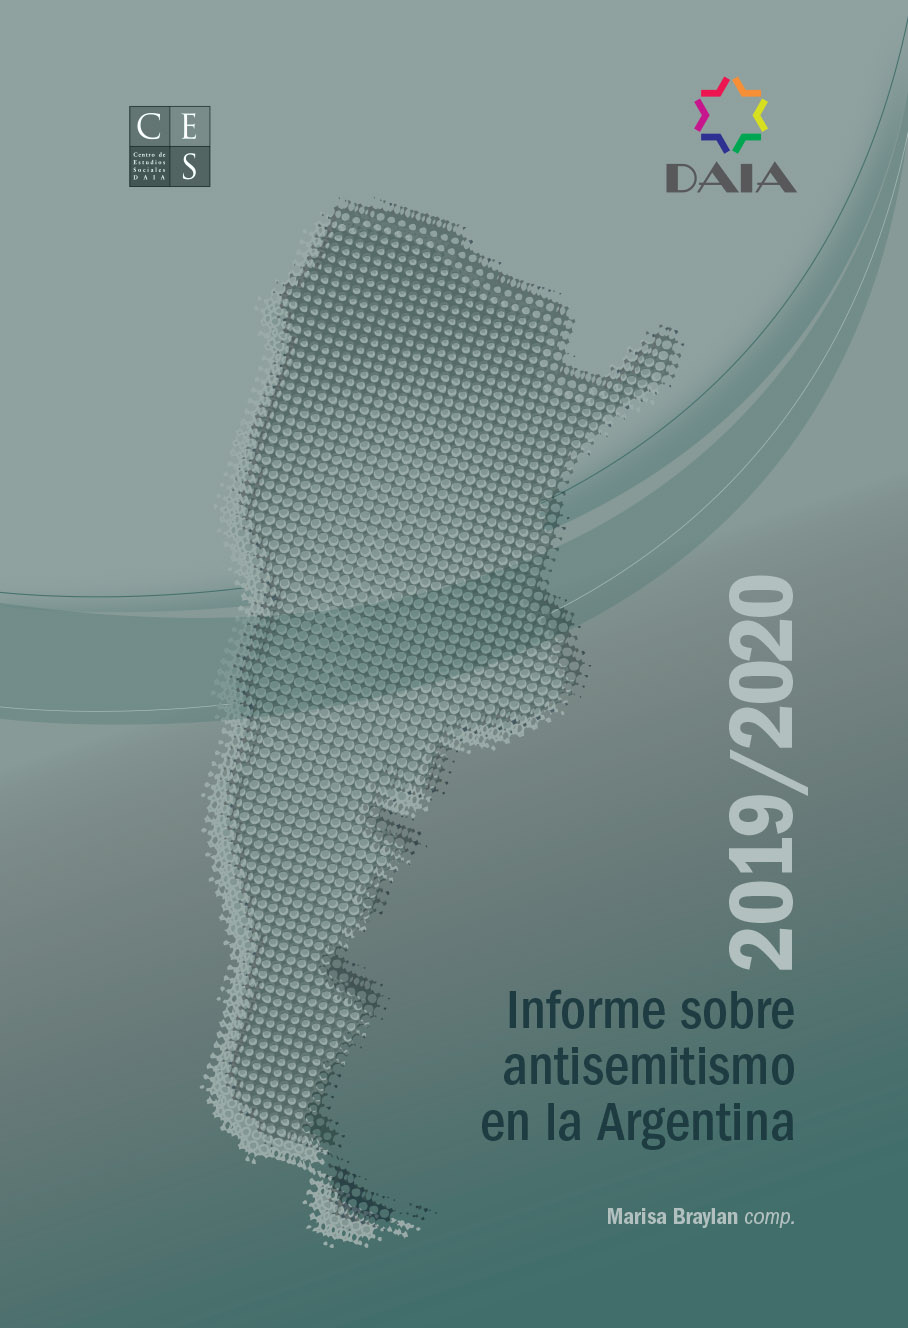 Informe sobre Antisemitismo en la Argentina 2019/2020